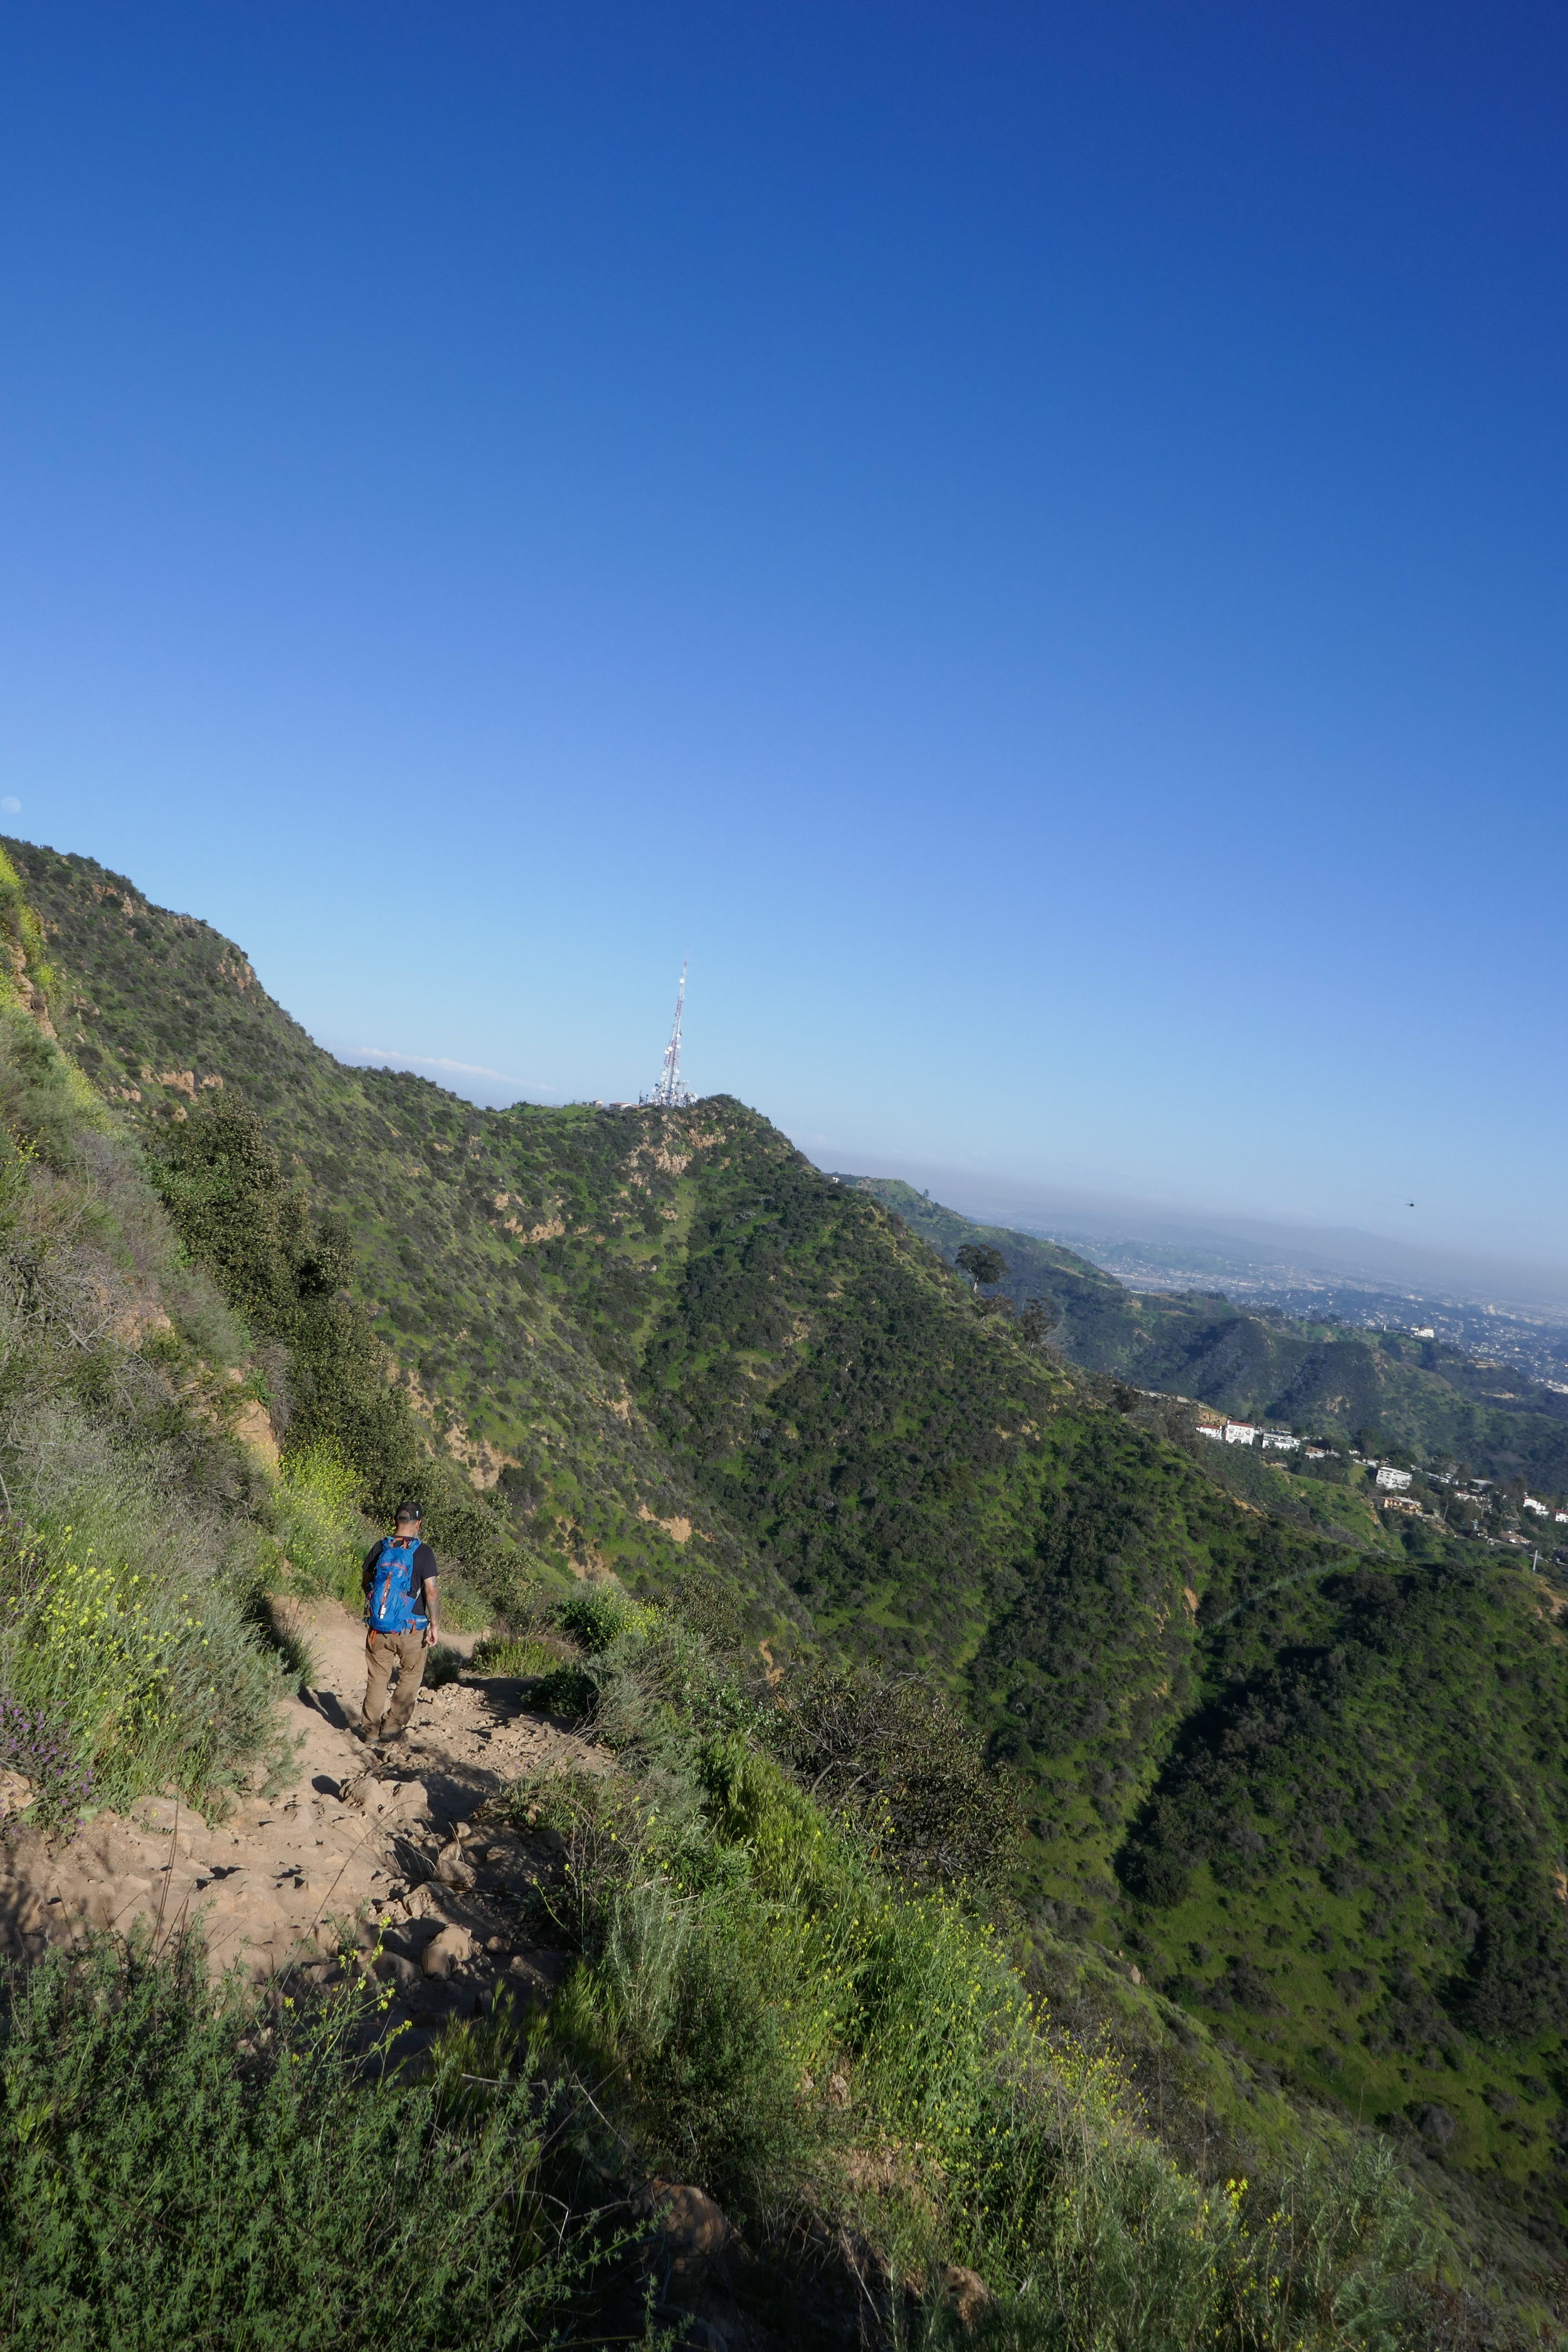 Trilha para o letreiro de Hollywood via Burbank Peak Trail